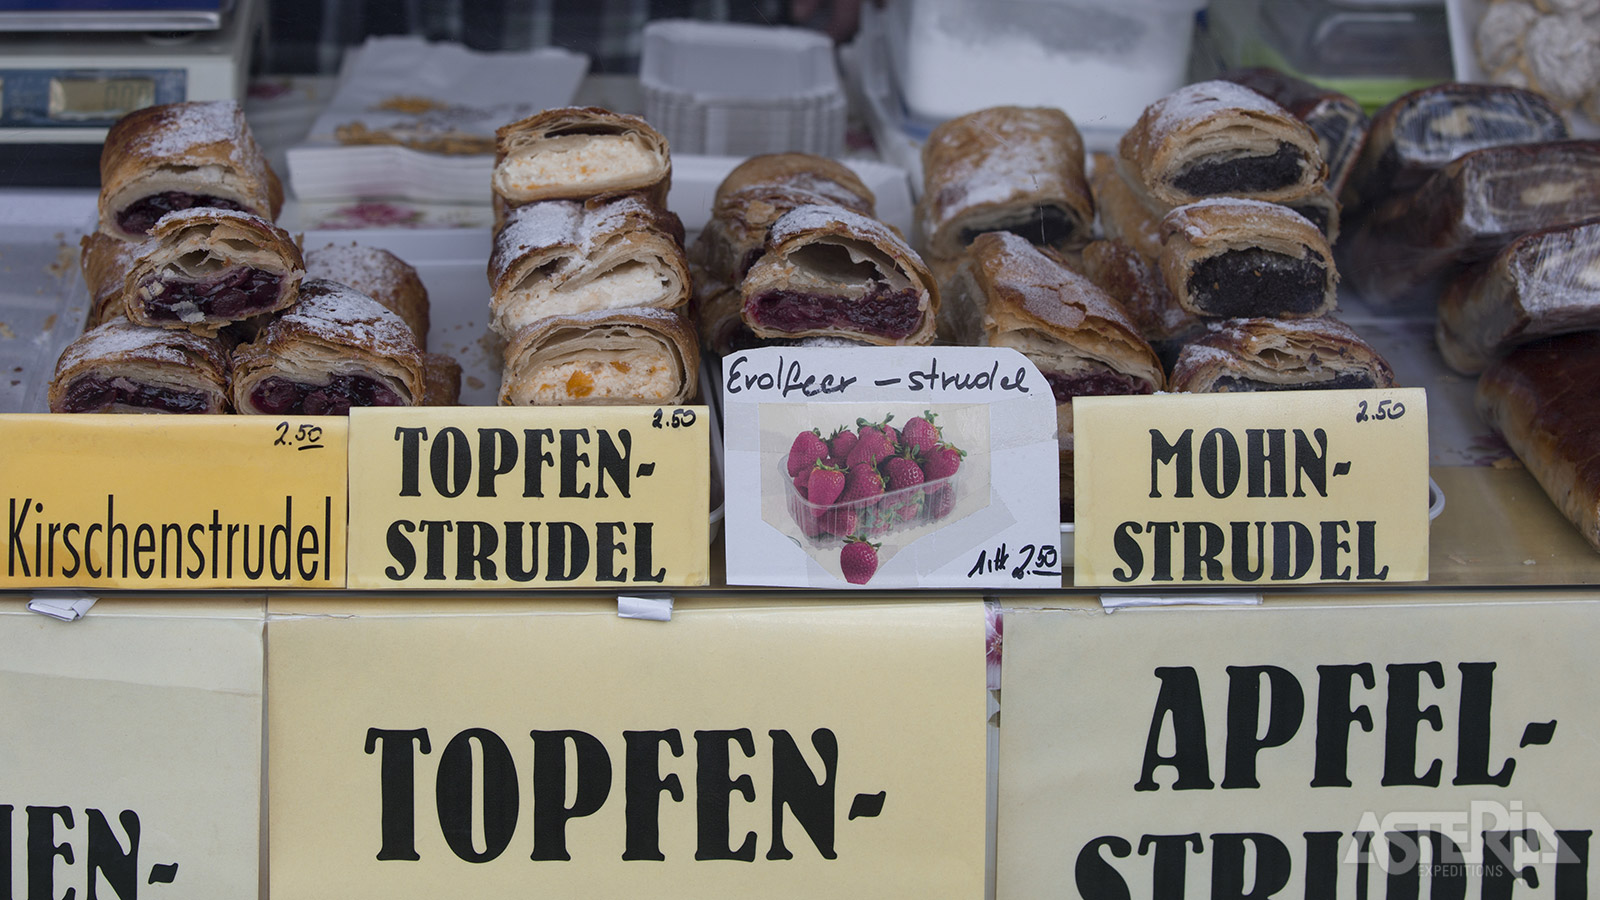 In Wenen kan niet rond deze lekkernij: Apfelstrudel, een typisch Oostenrijks gebakje met appel en rozijnen